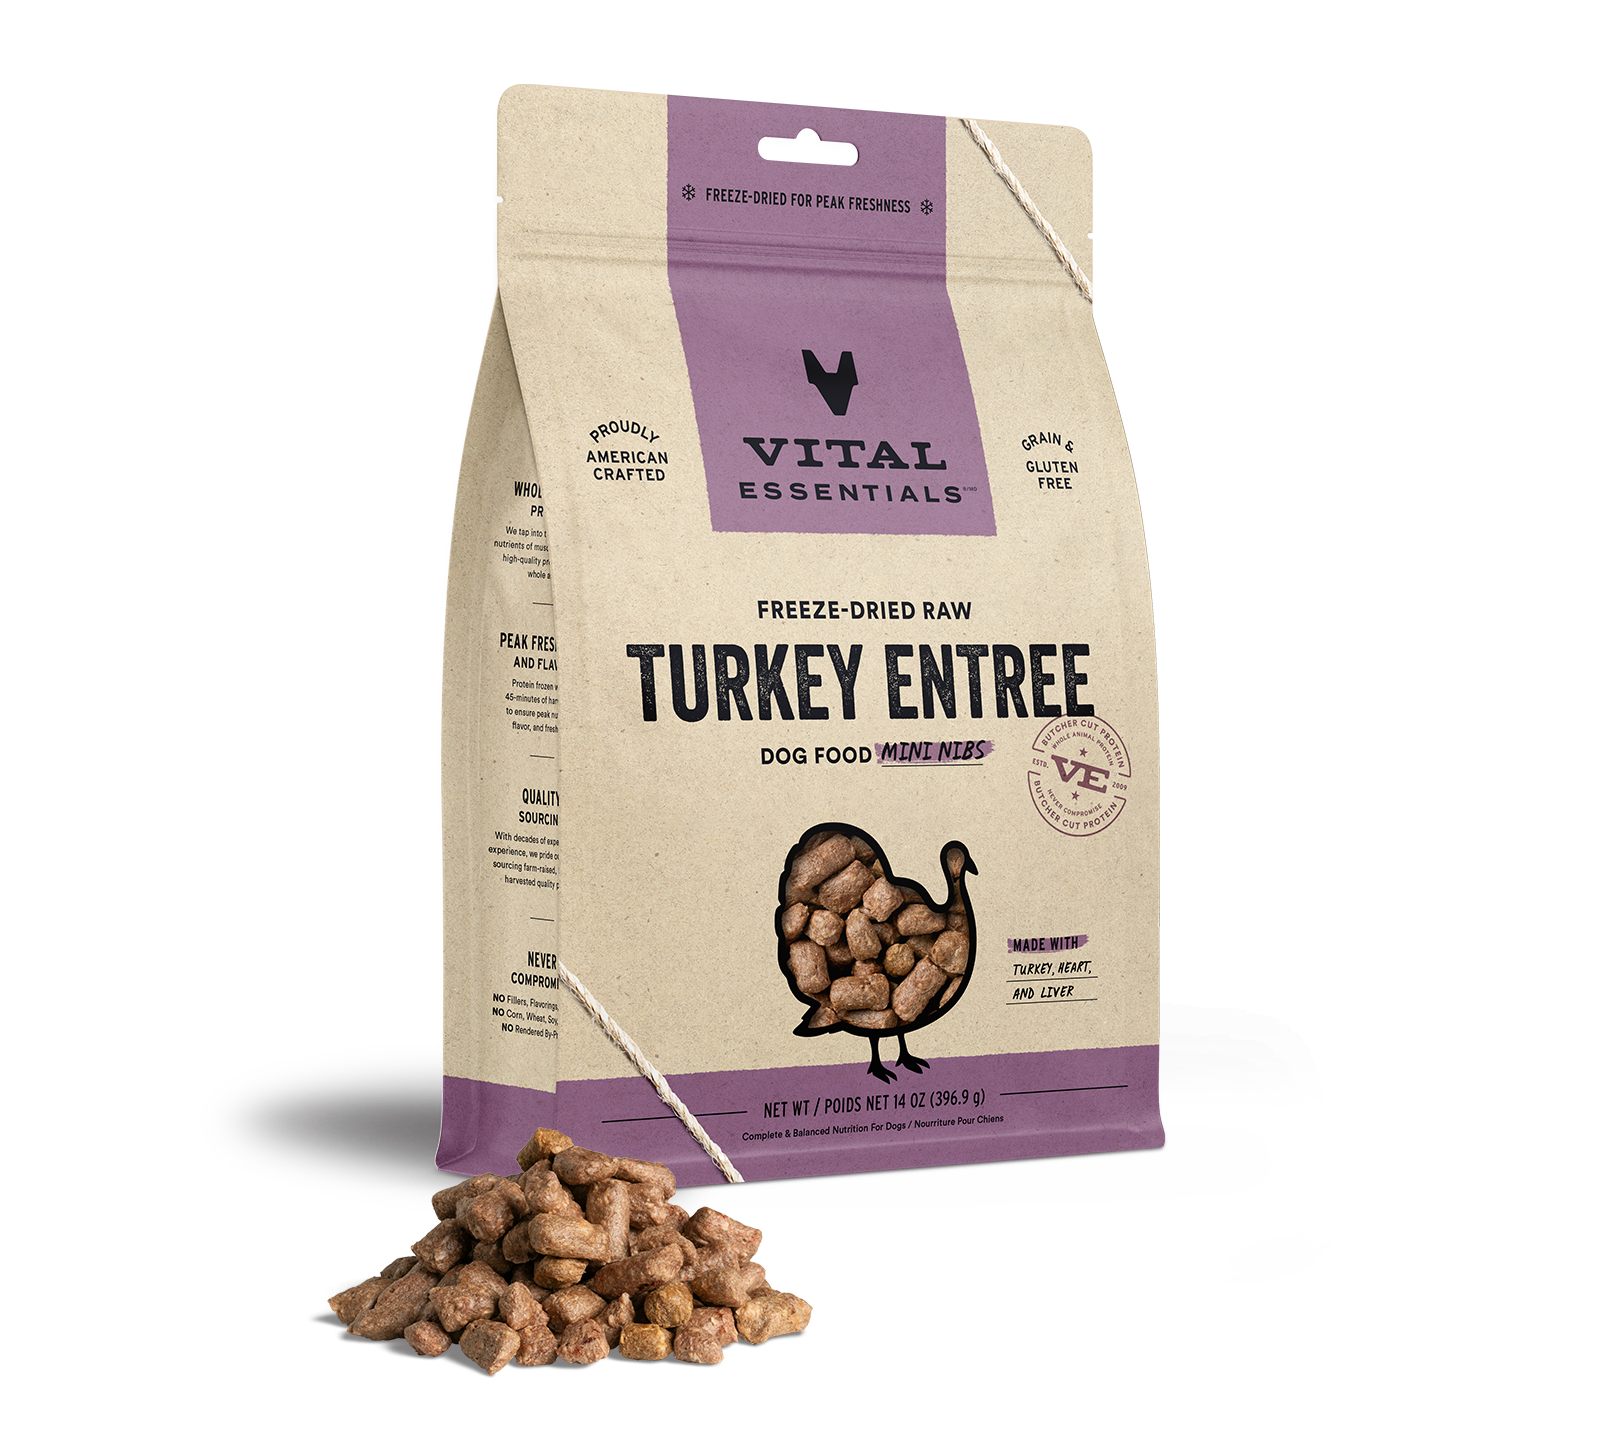 Vital Essentials Freeze-Dried Raw Turkey Entree Dog Food Mini Nibs, 14 oz - Treats